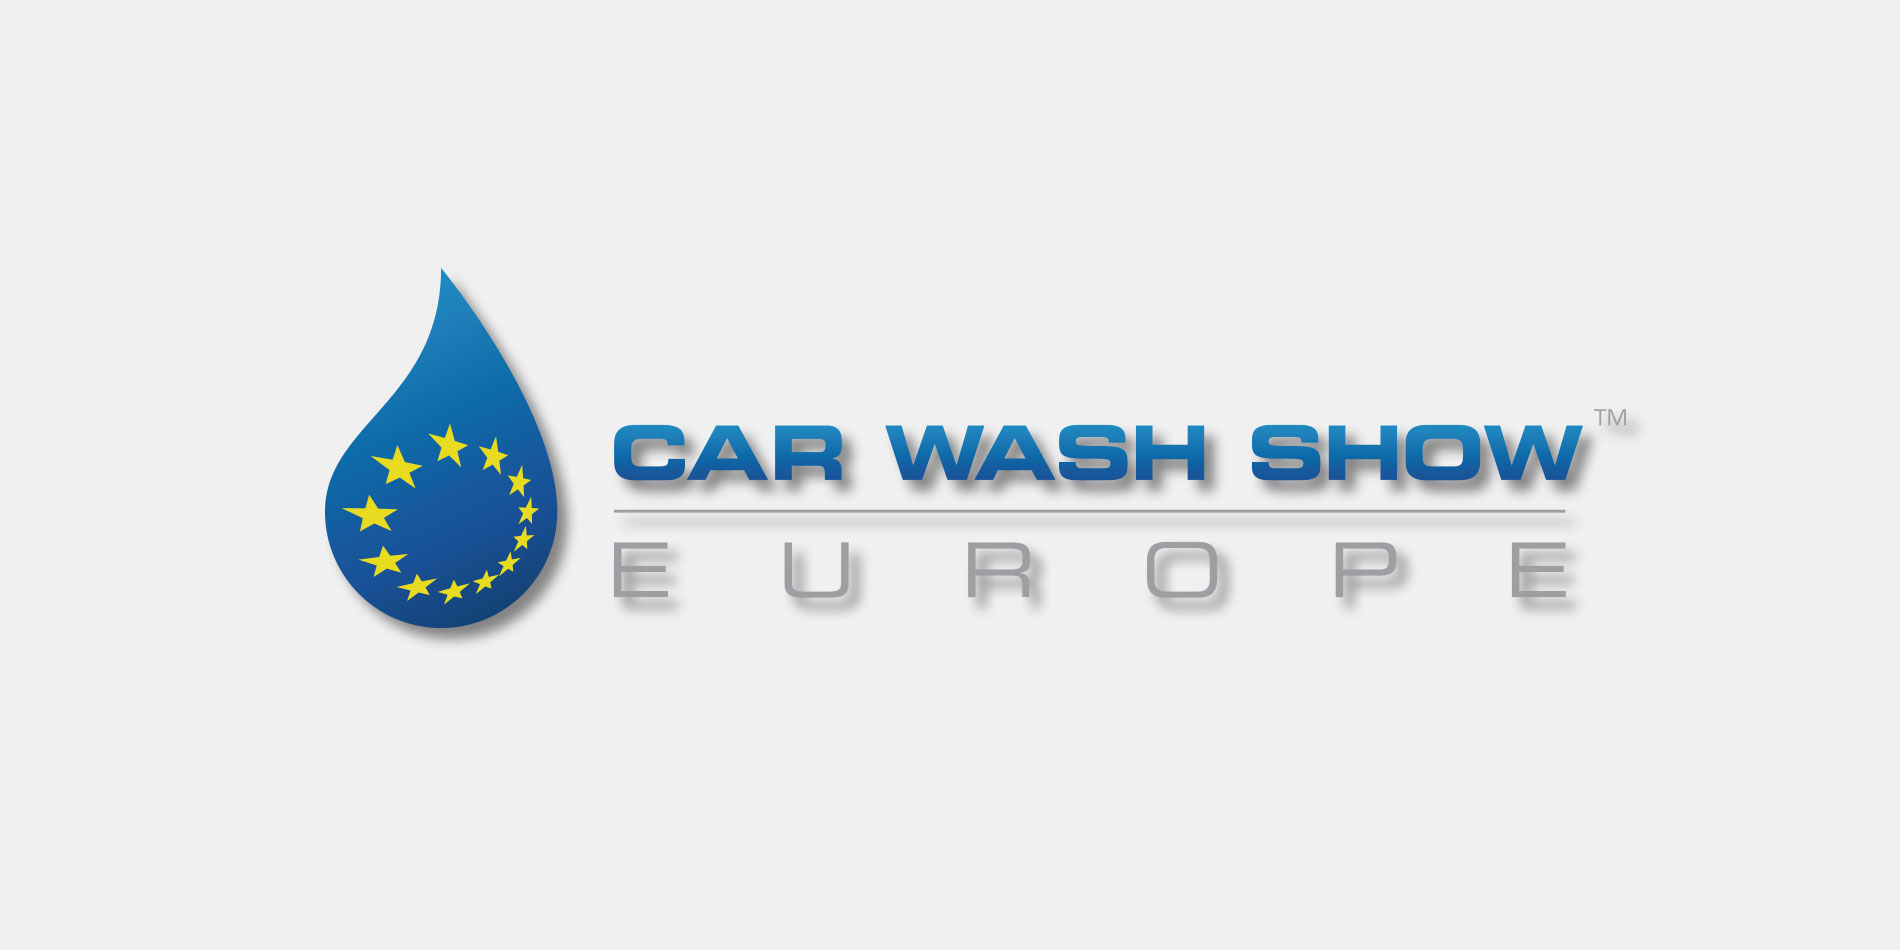 Messe Messeankündigung für die Car Wash Show in Amsterdam mit R+M / Suttner